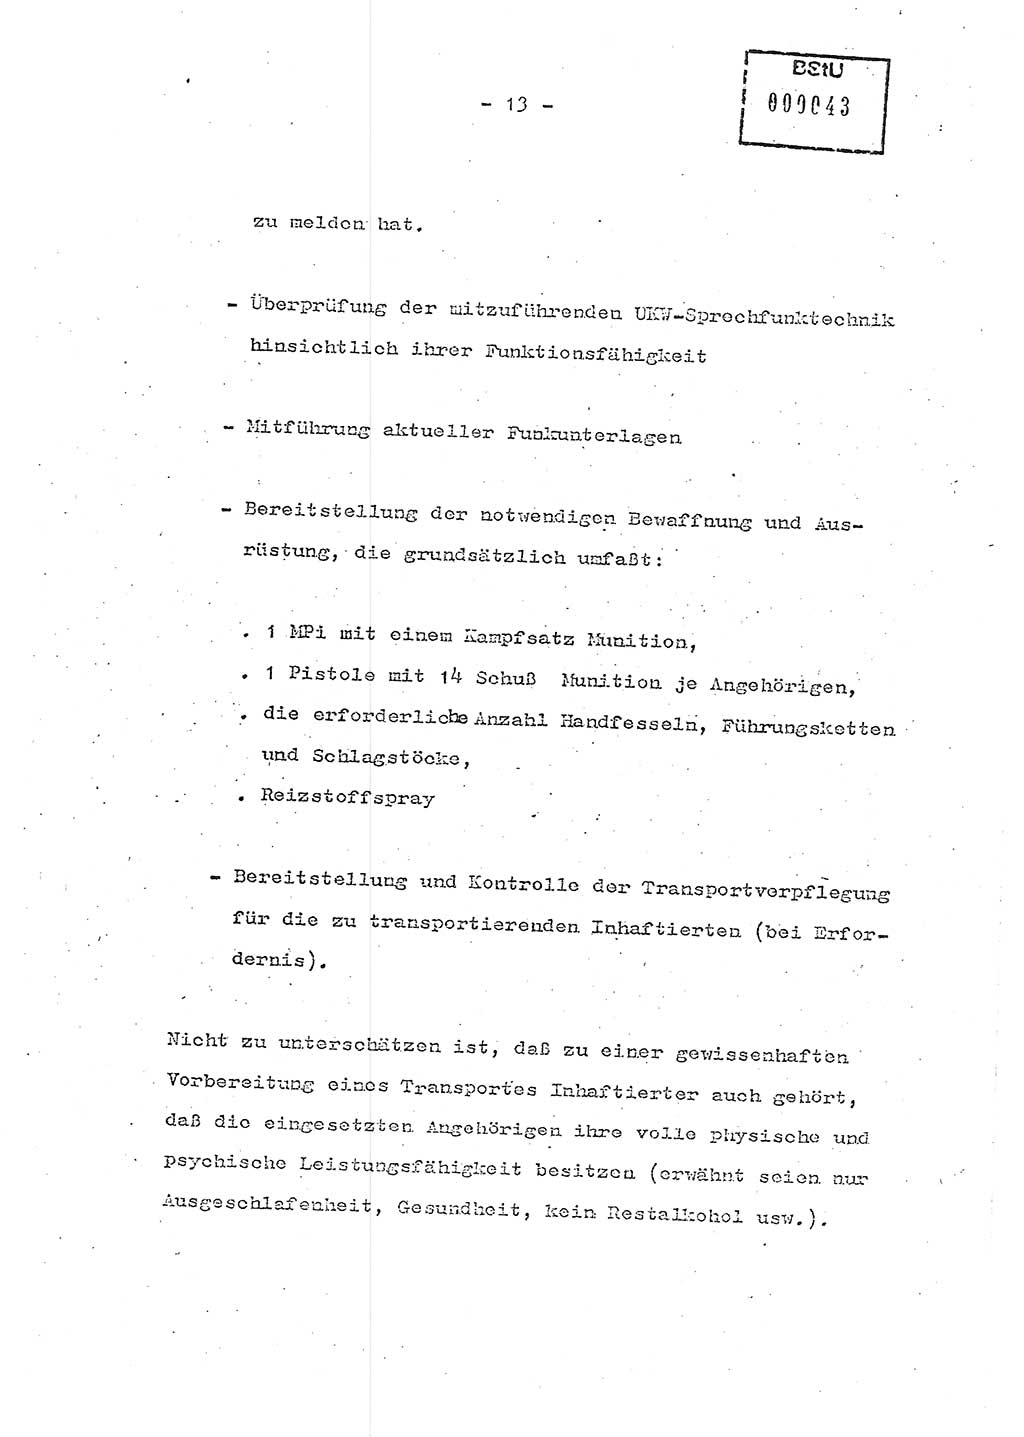 Schulungsmaterial Exemplar-Nr.: 7, Ministerium für Staatssicherheit [Deutsche Demokratische Republik (DDR)], Abteilung (Abt.) ⅩⅣ, Berlin 1986, Seite 13 (Sch.-Mat. Expl. 7 MfS DDR Abt. ⅩⅣ /86 1986, S. 13)